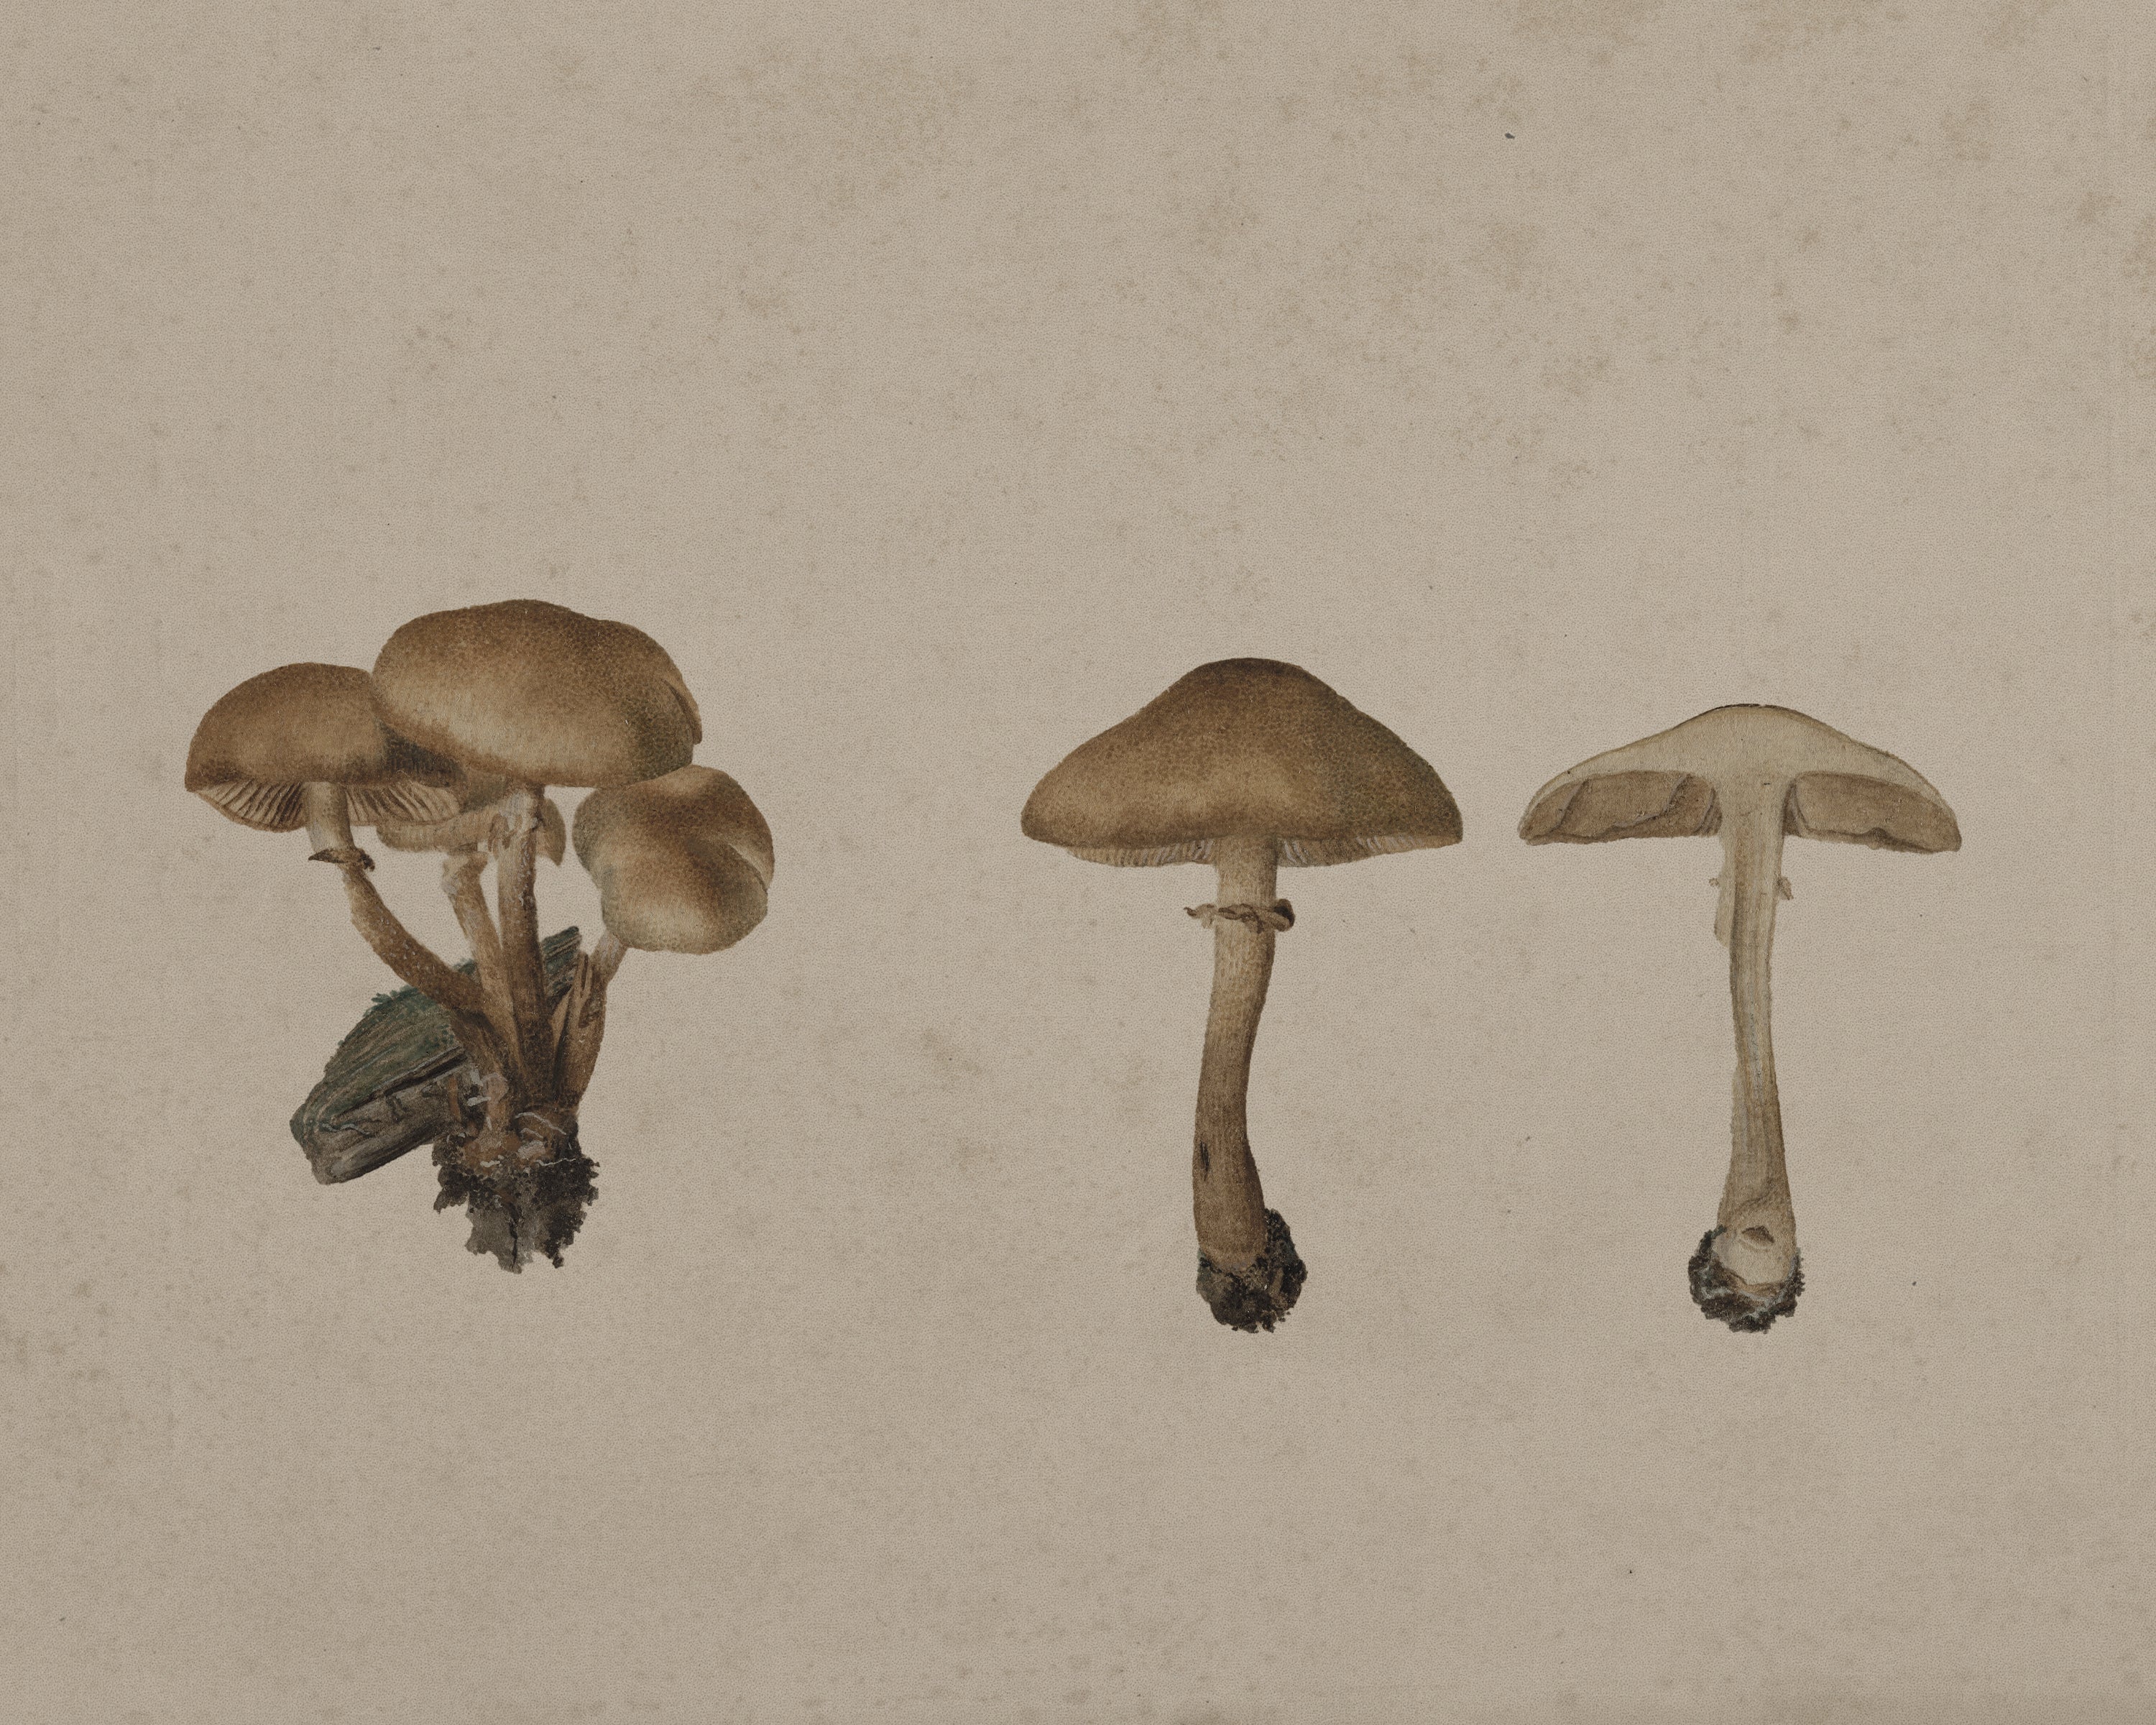 Vintage Still Life Print - Mushrooms